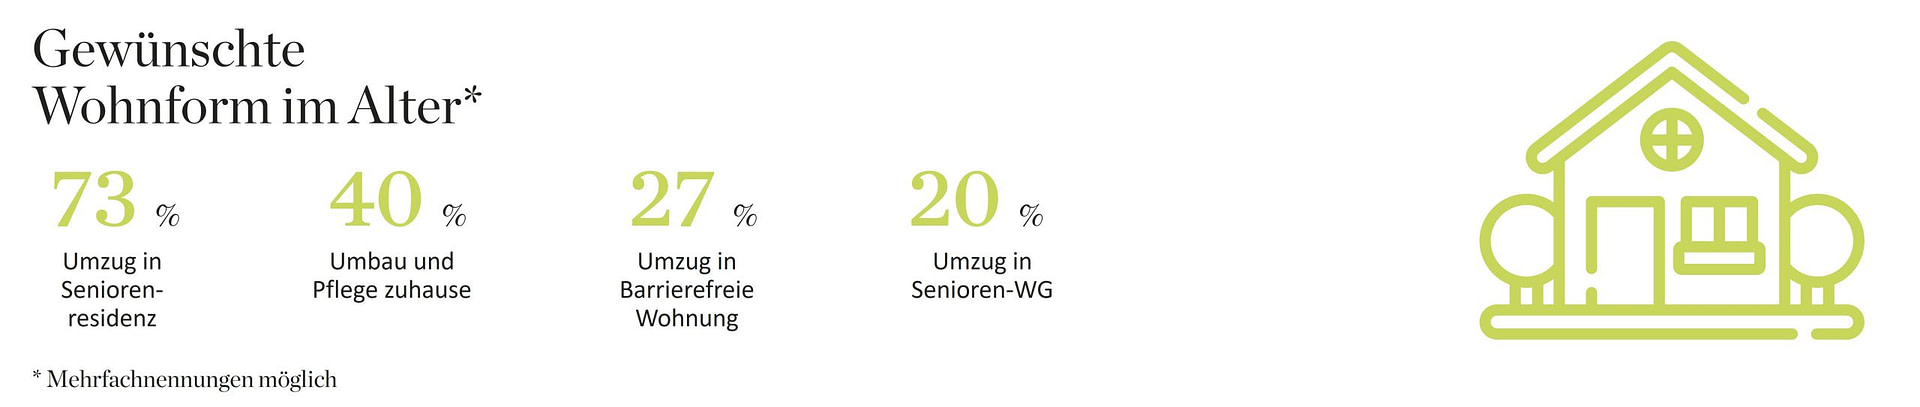 Infografik zur Studie 'Wie verändern sich Wohnbedürfnisse der Generation 60+'. Gewünschte Wohnform im Alter: Umzug in Seniorenresidenz (73%), Umbau und Pflege zuhause (40%), Umzug in Barrierefreie Wohnung (27%), Umzug in Senioren-WG (20%)